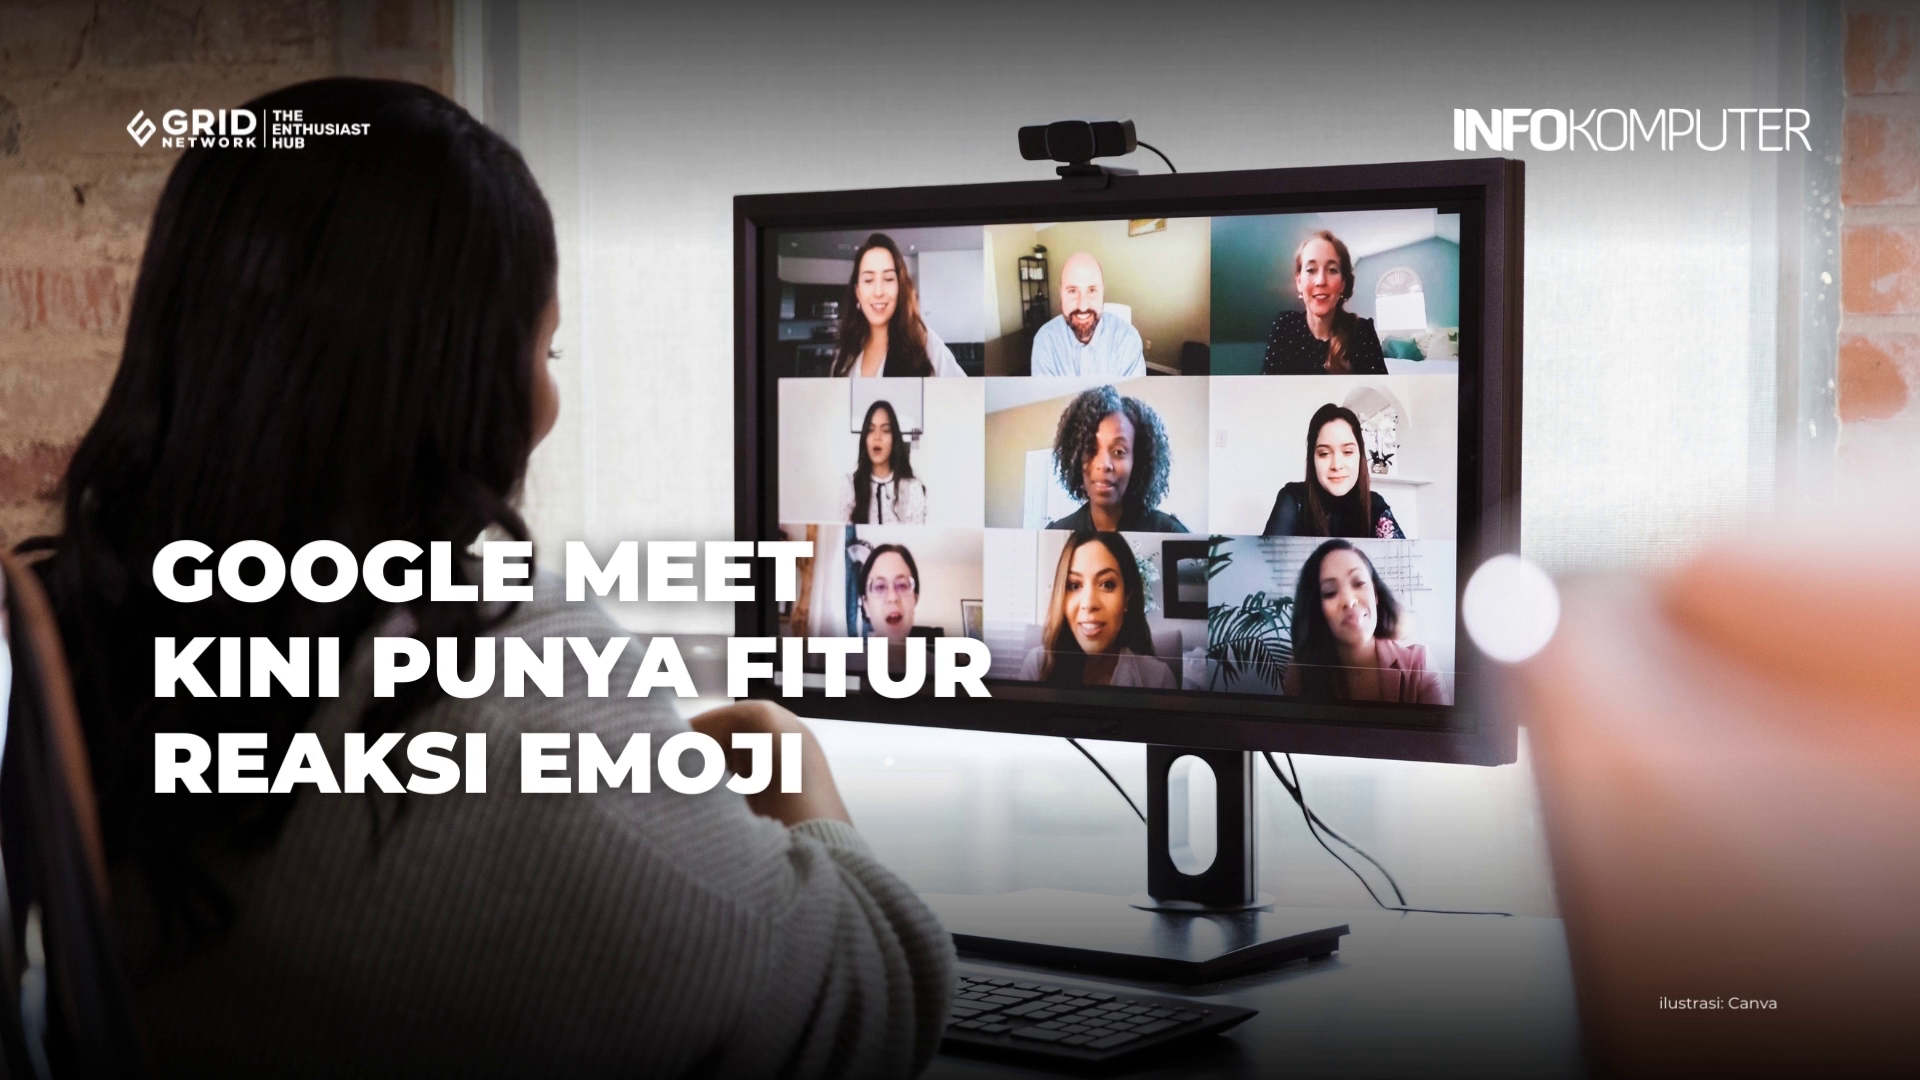 Aplikasi Google Meet Kini Punya Fitur Reaksi Emoji | Berita Teknologi